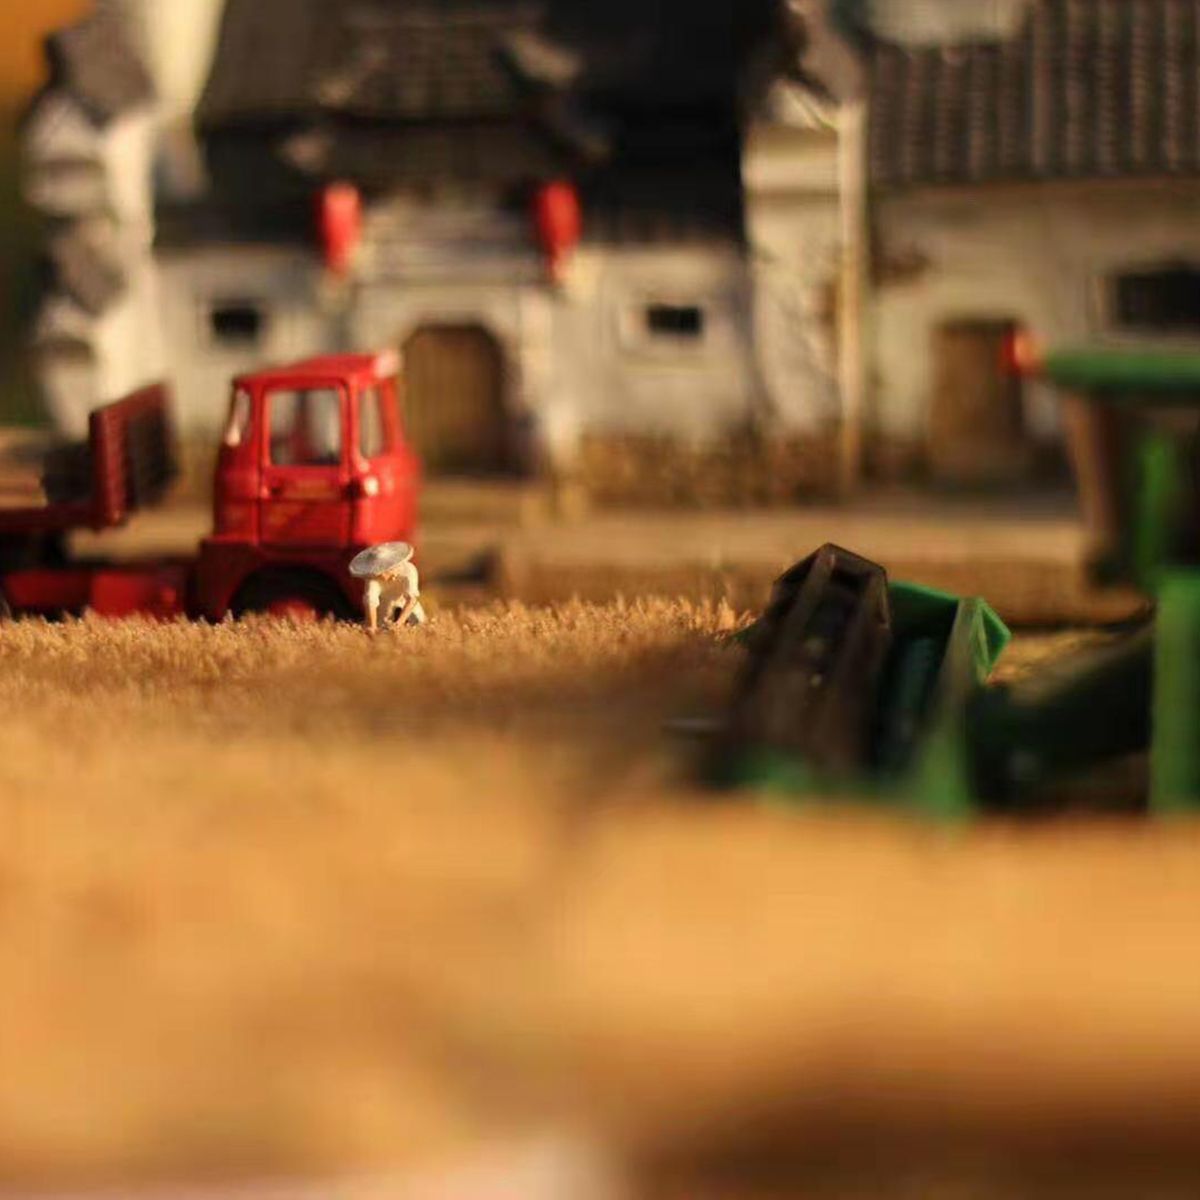 Mini-Rice-Field-Grass-Model-Scenario-Train-Sand-Table-DIY-Modelling-Materials-Decorations-1653267